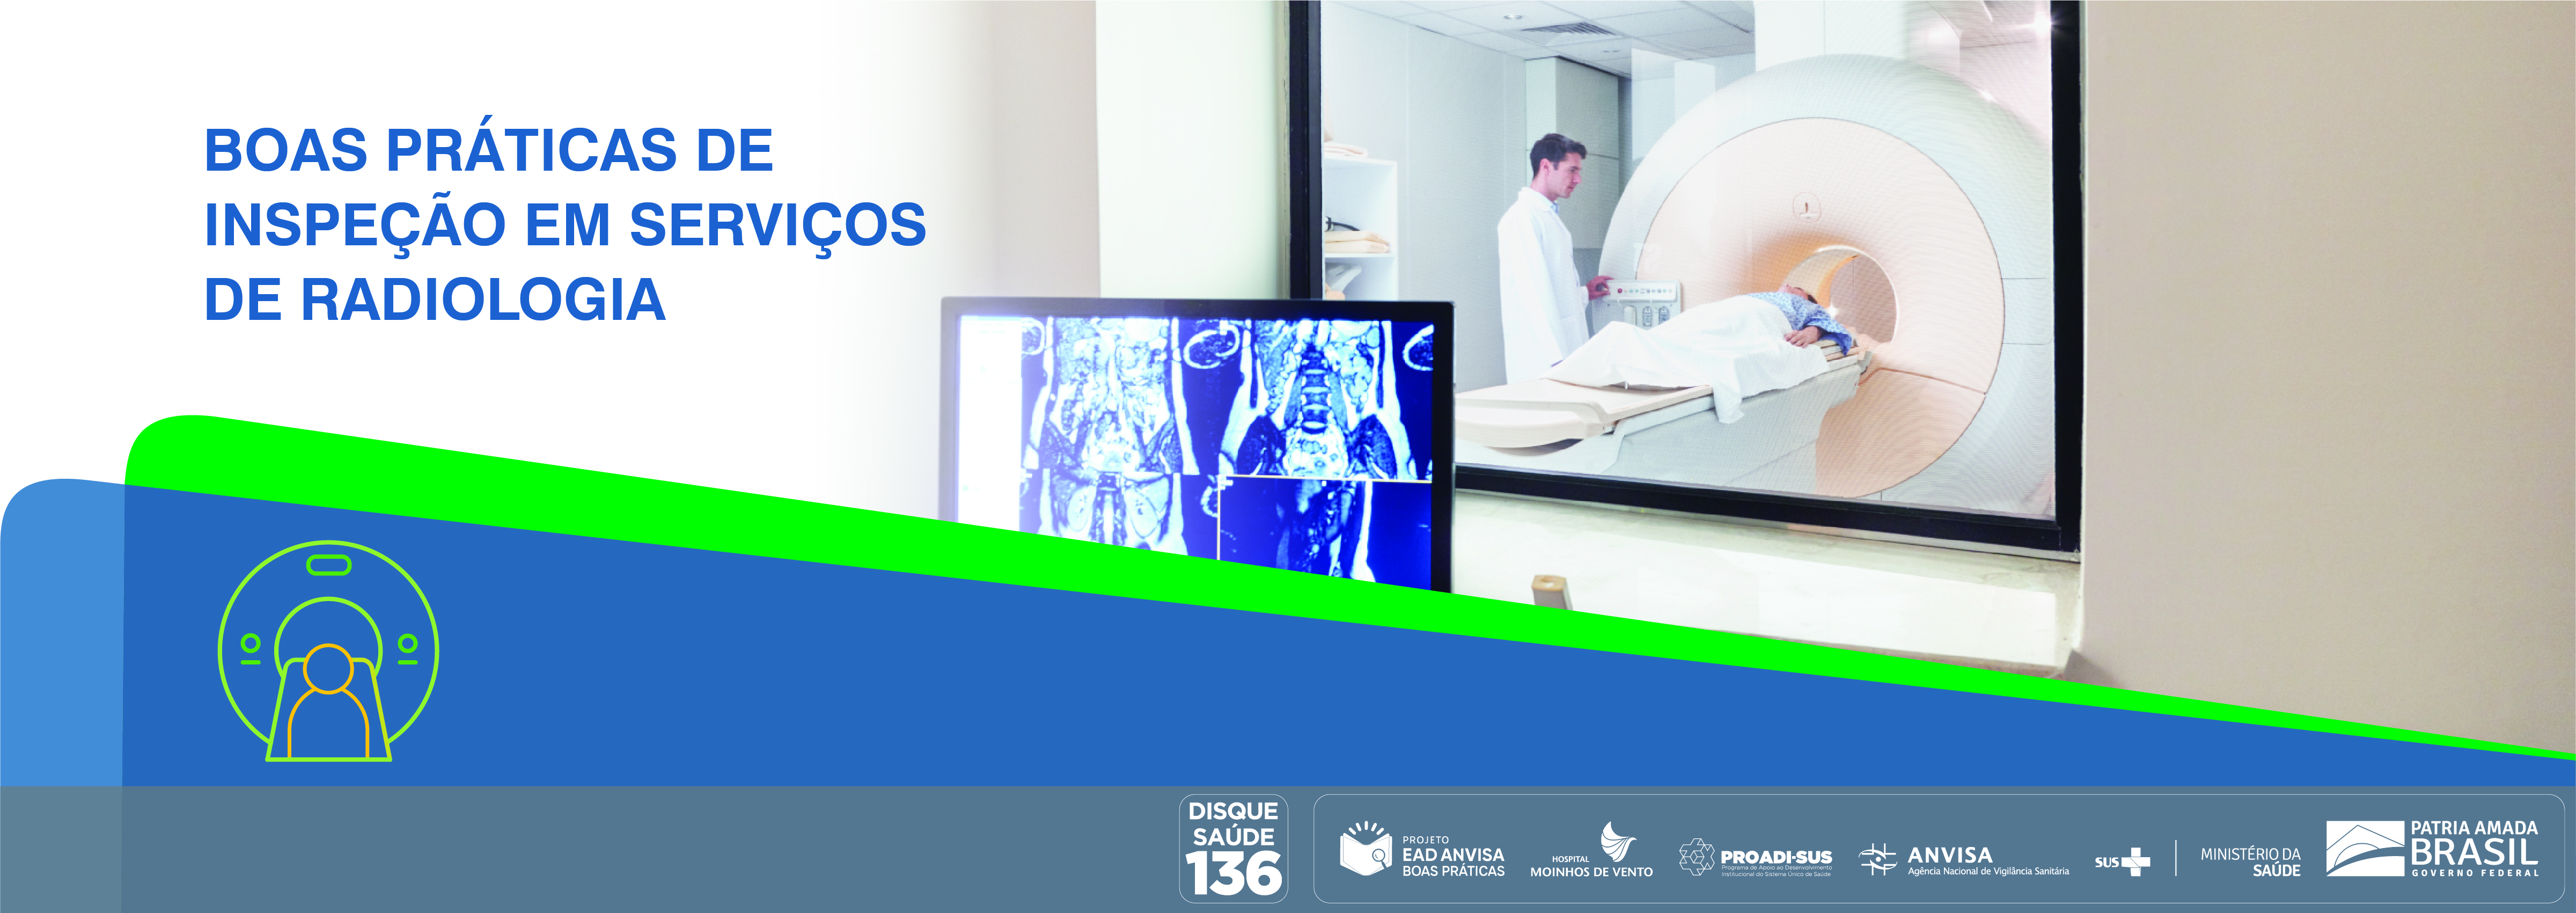 Boas Práticas de Inspeção em Serviços de Radiologia Anvisa_BPISR_2020